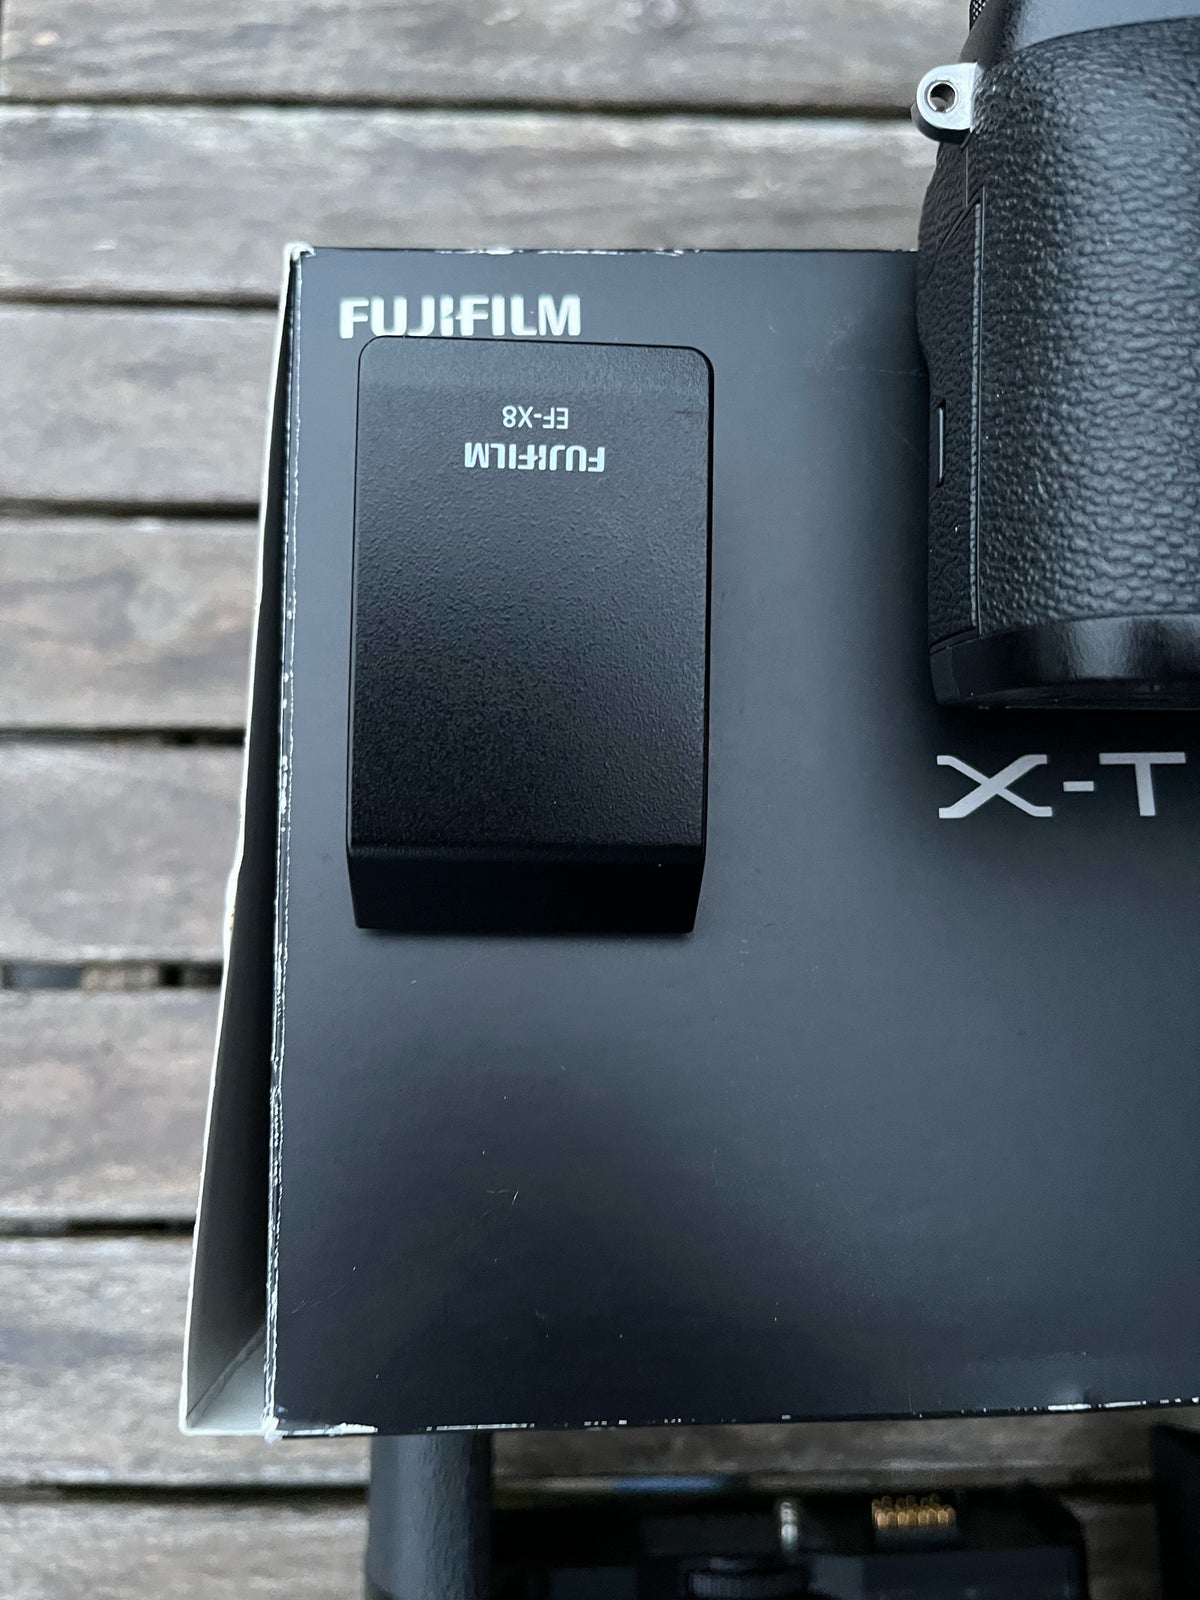 Fujifilm, X-t2, 24 megapixels